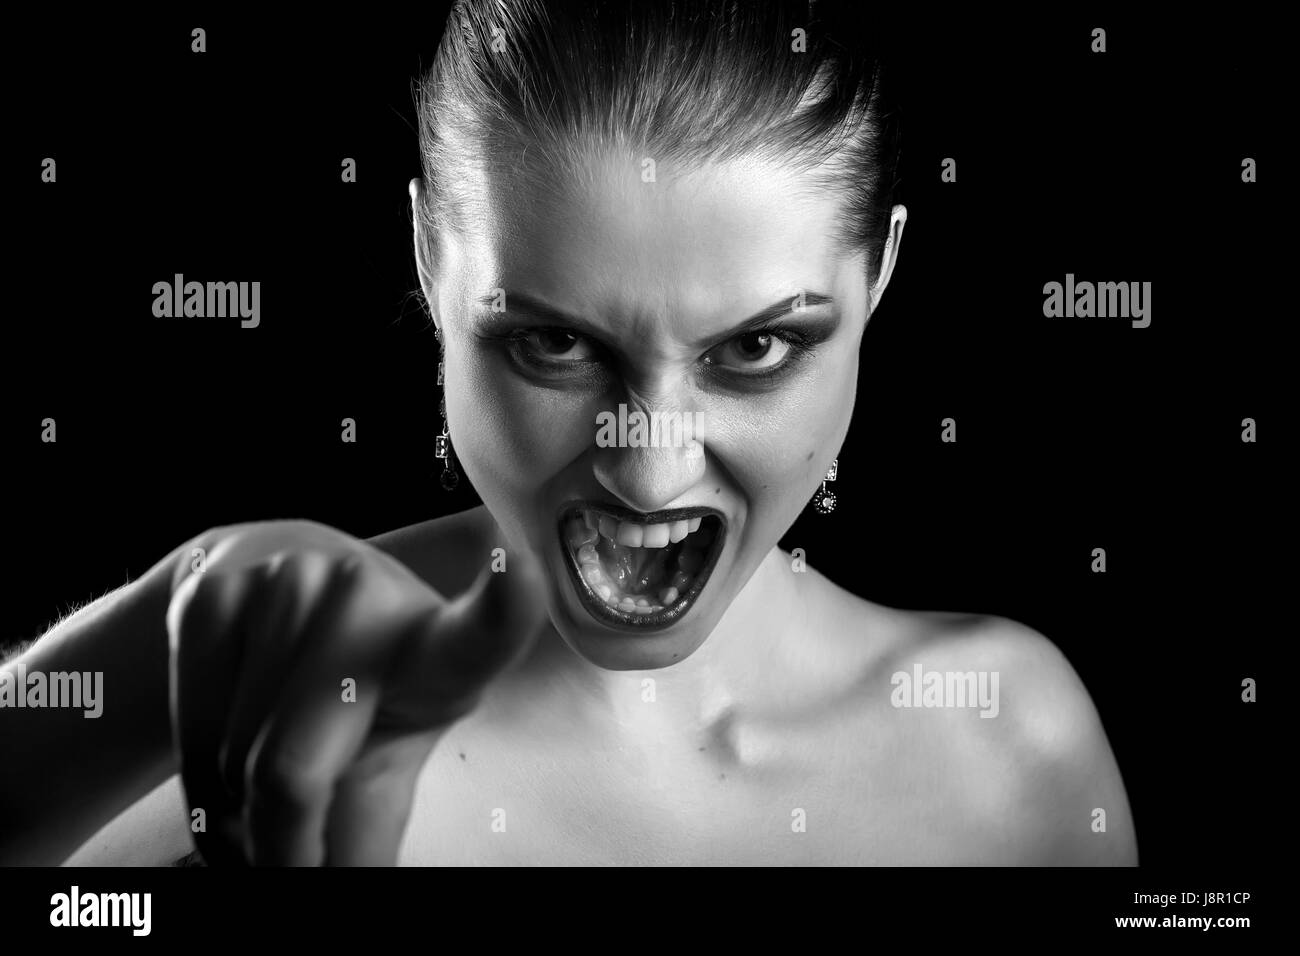 Belle femme en colère au point de crier de l'appareil photo, monochrome Banque D'Images